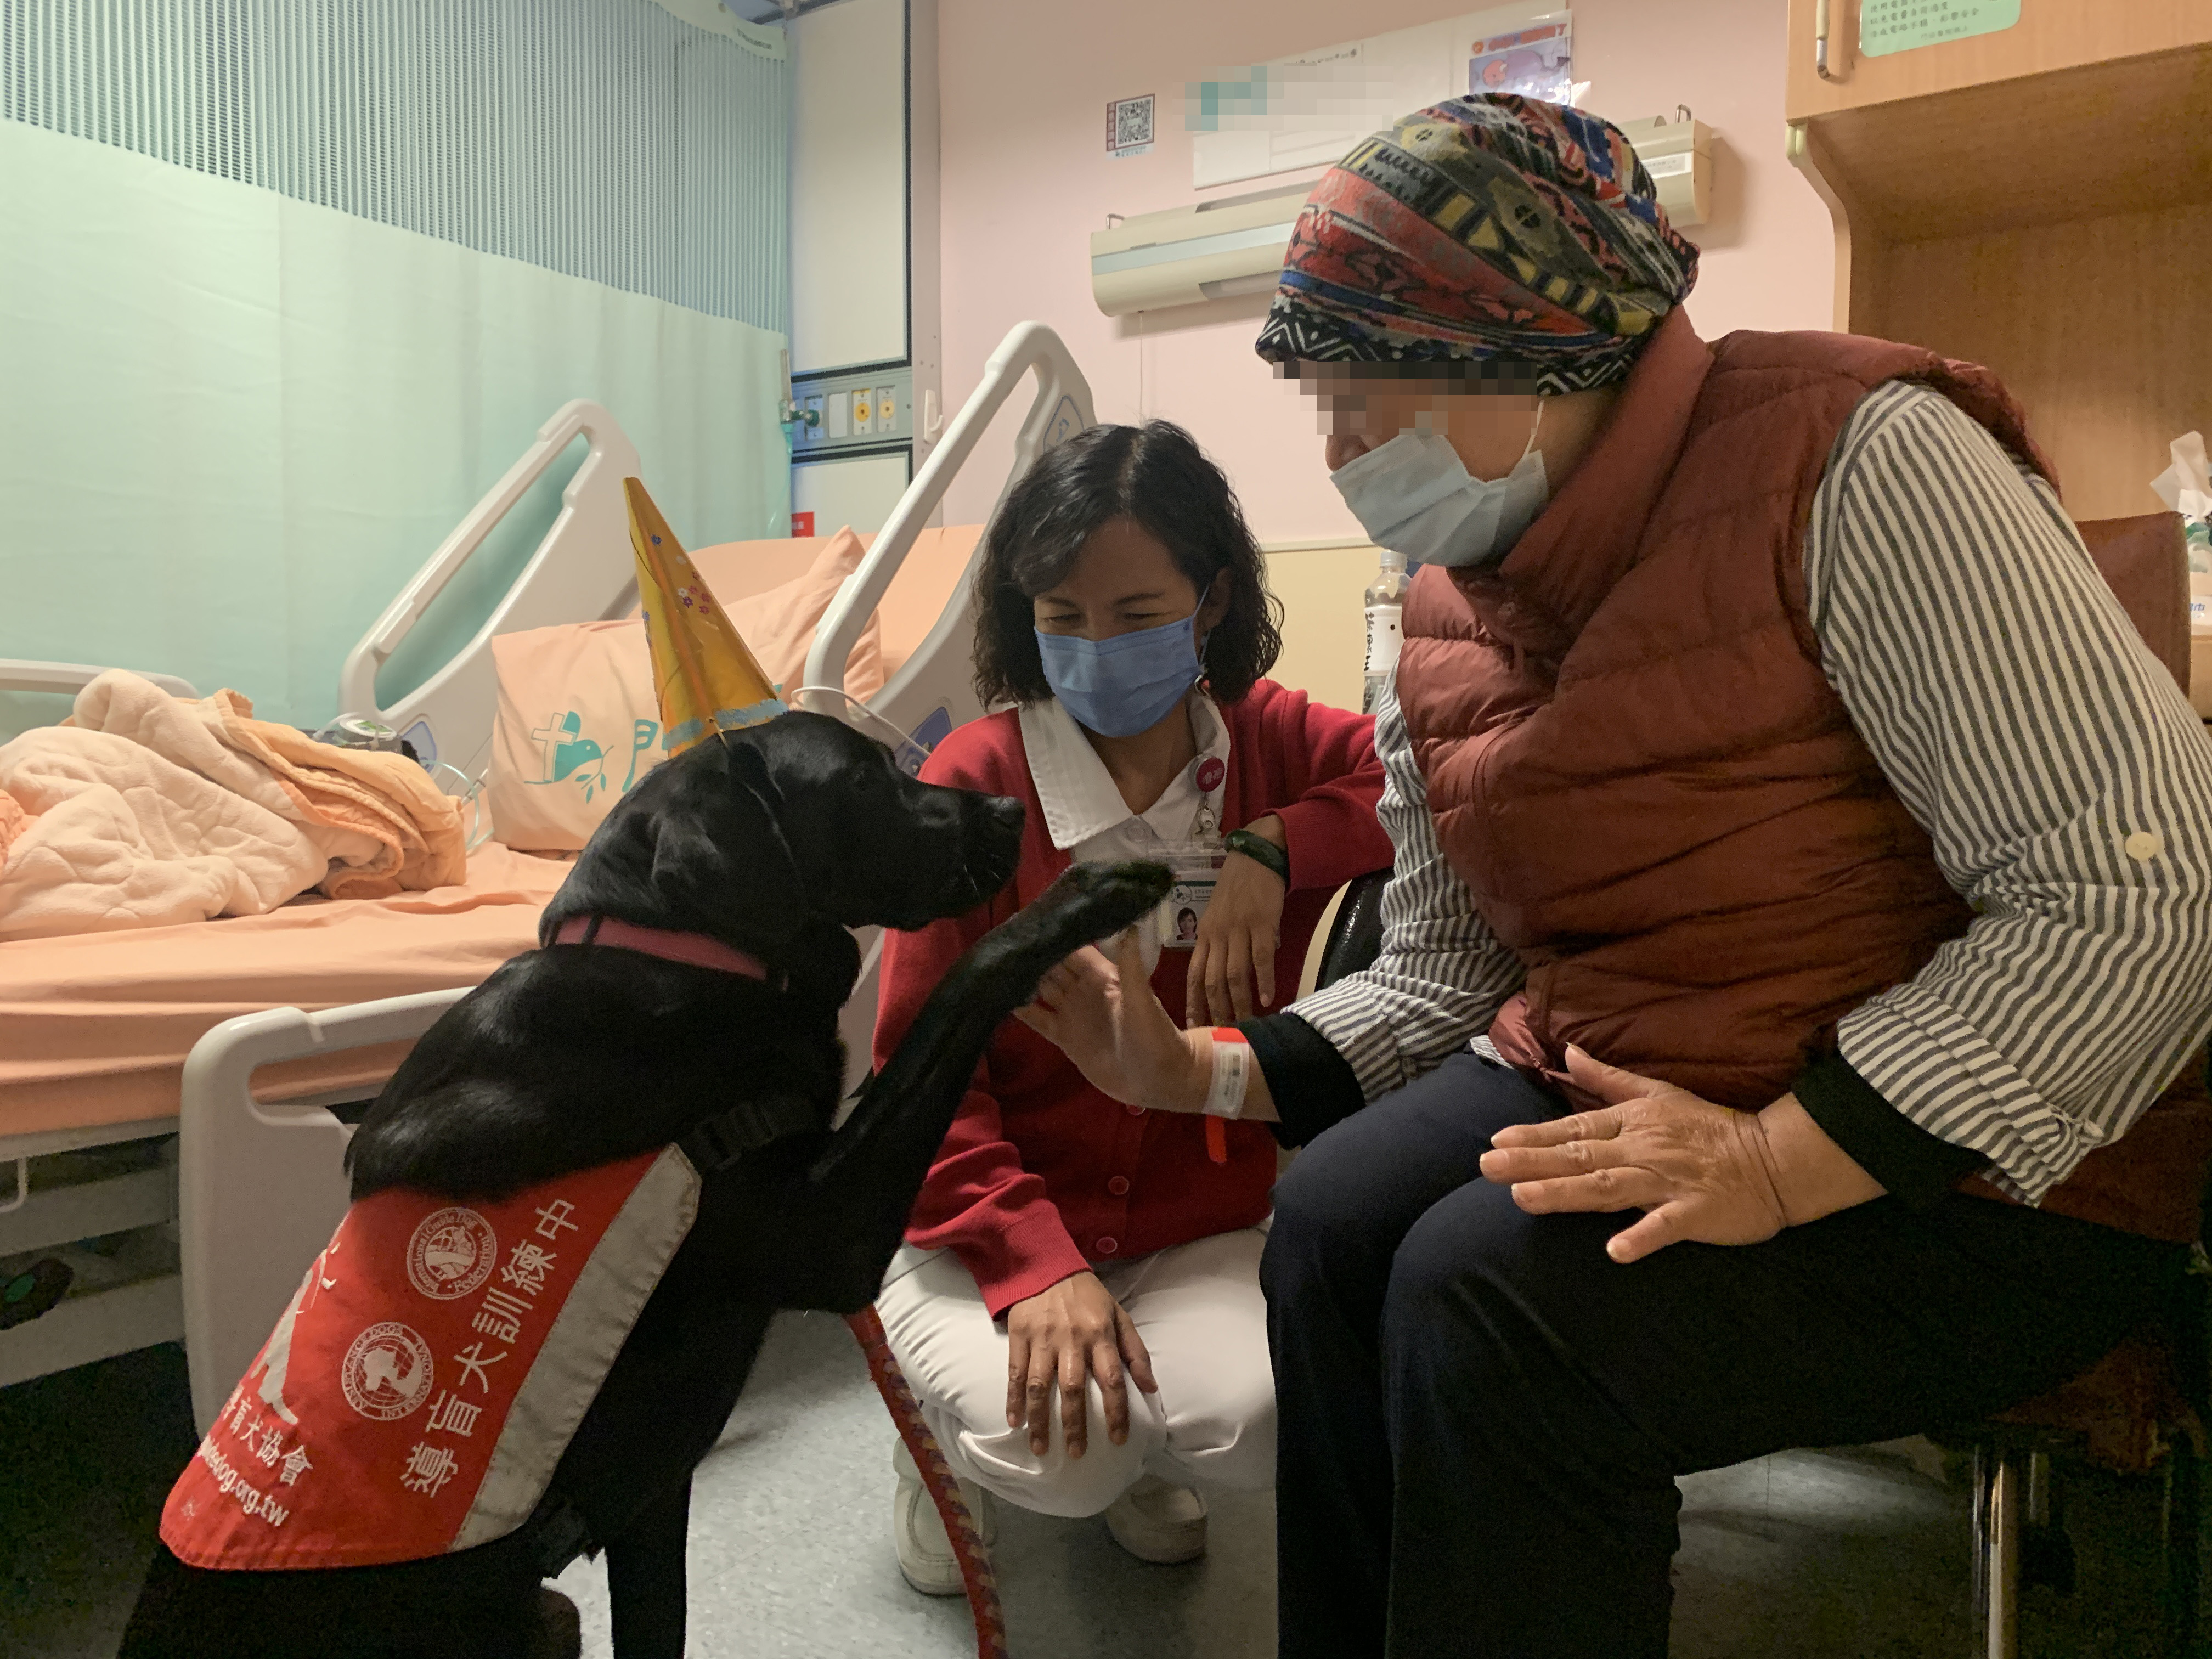 治療犬Oba與患者互動。